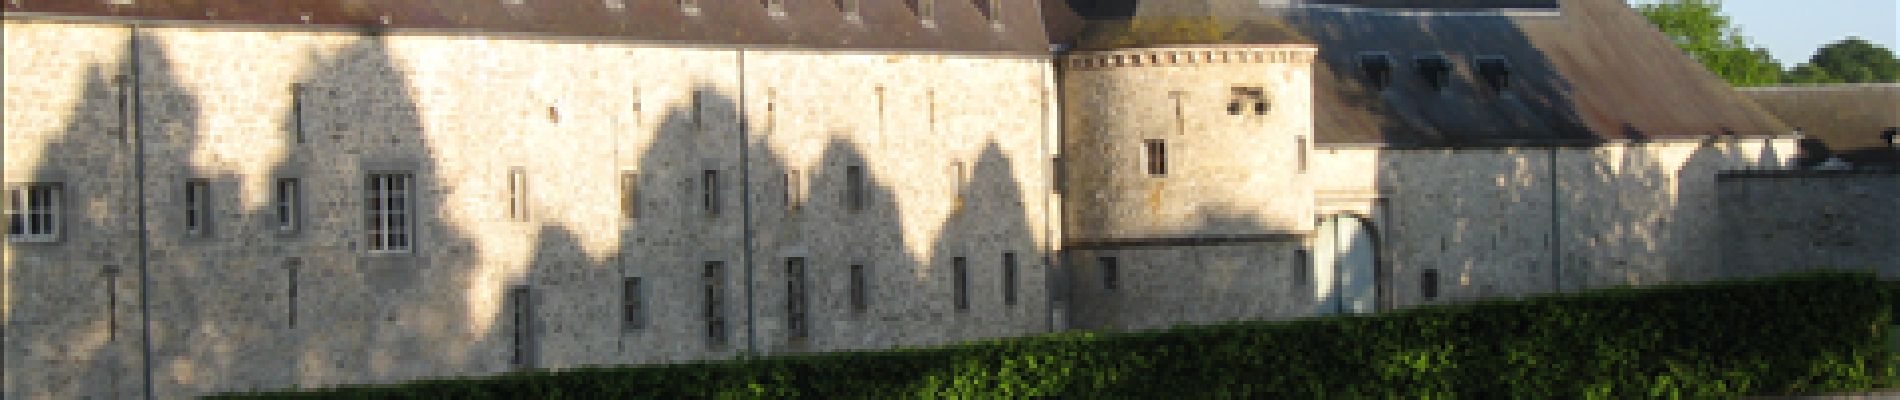 Point of interest Modave - Château des Comtes de Marchin - Photo